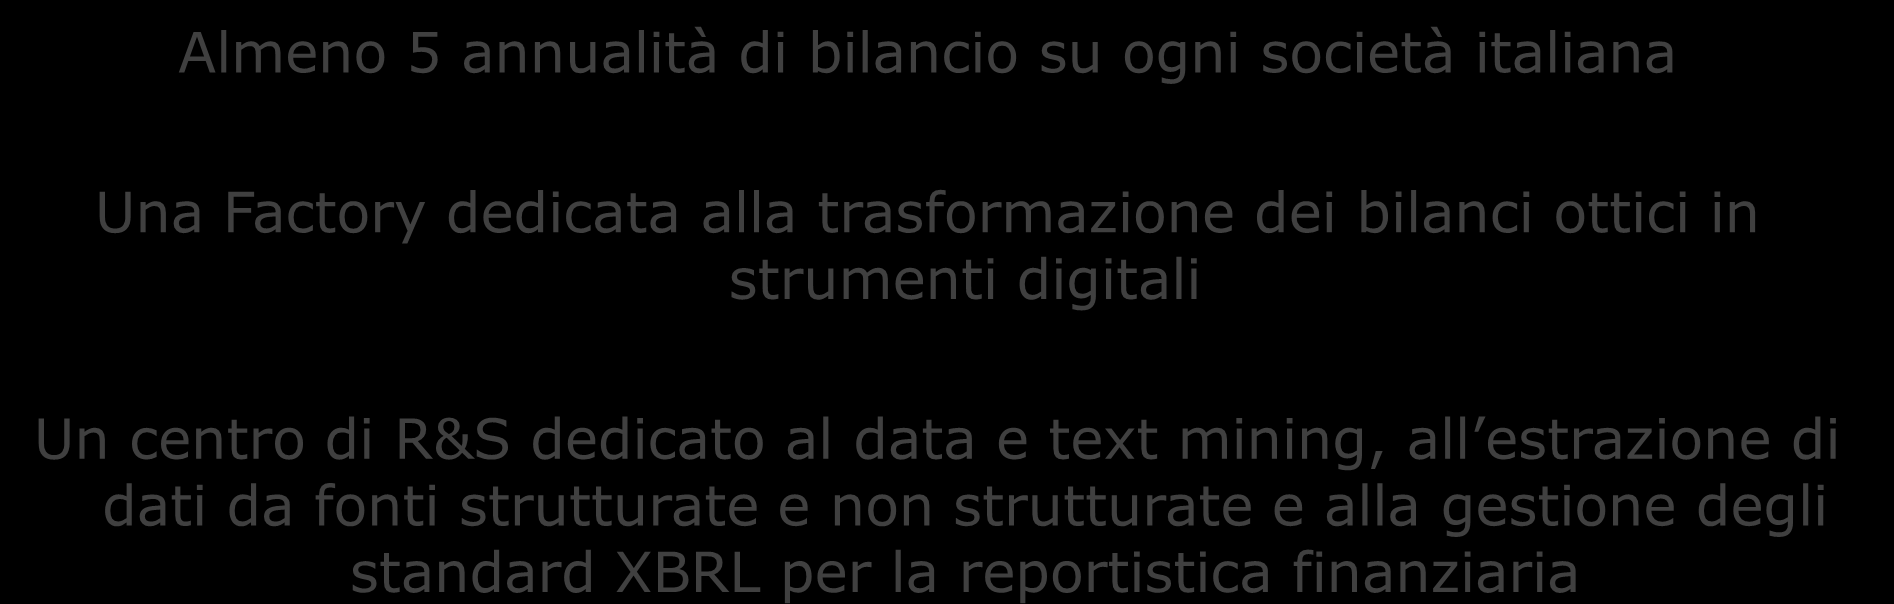 I Bilanci Societari del Gruppo CRIF Almeno 5 annualità di bilancio su ogni società italiana Una Factory dedicata alla trasformazione dei bilanci ottici in strumenti digitali Un